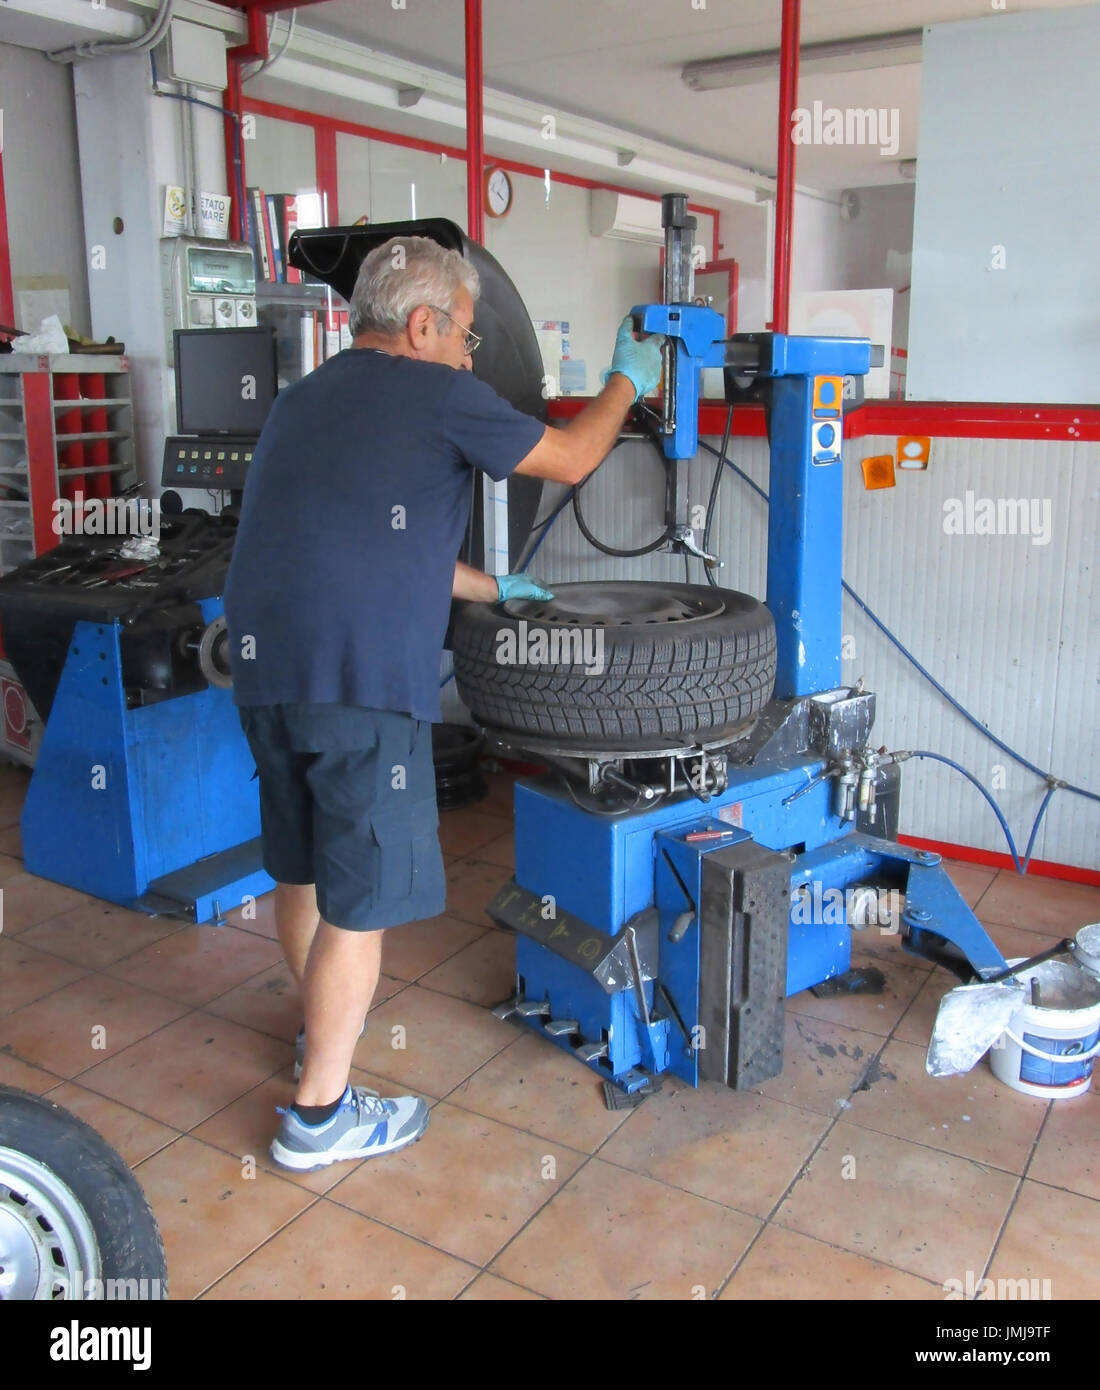 Le réparateur de pneus extrait le pneu de la jante Banque D'Images